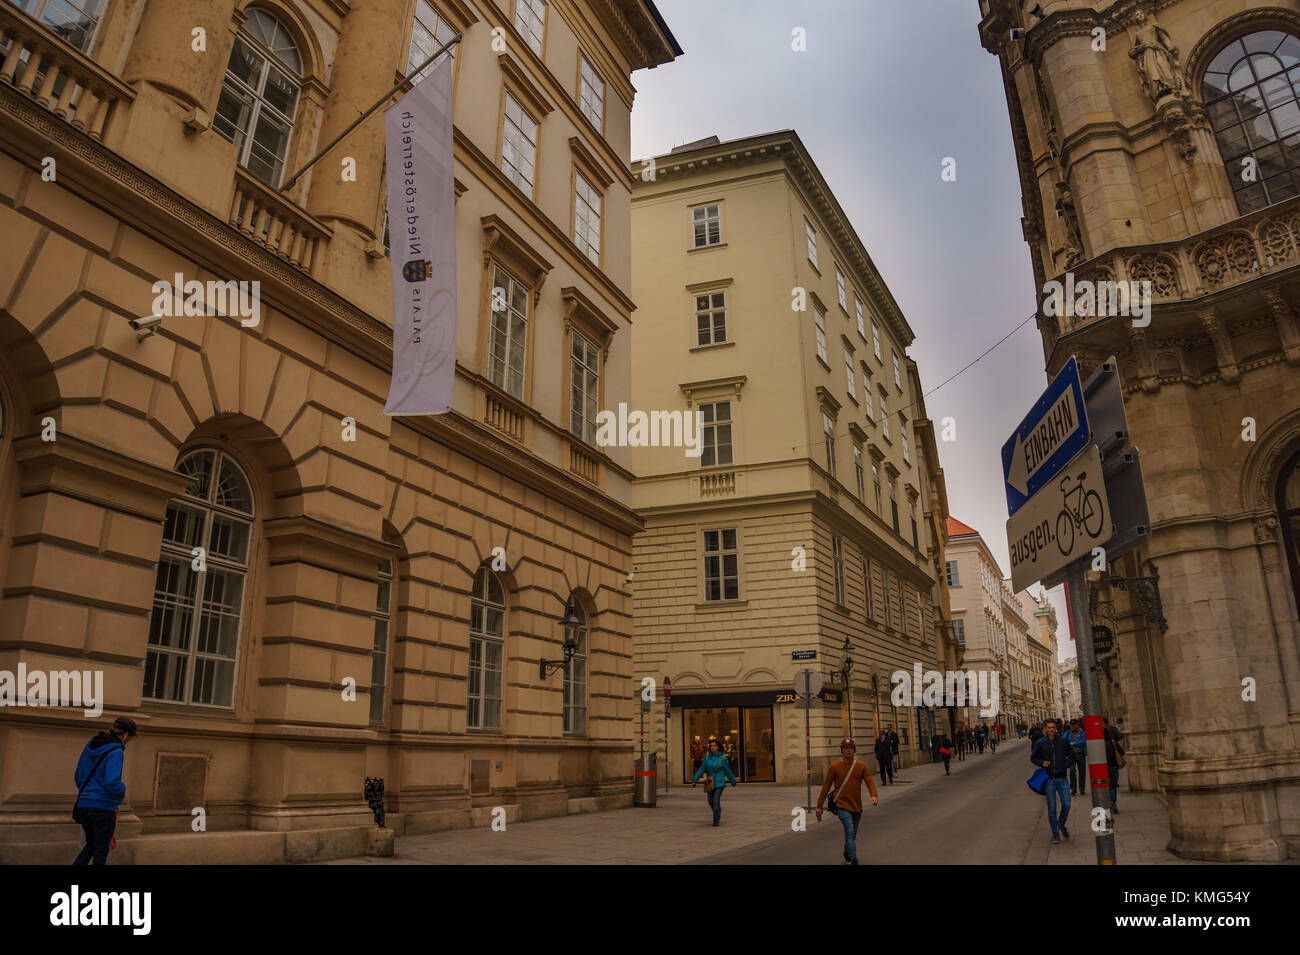 La photographie de rue dans le centre-ville de Vienne, Autriche. Magasins, boutiques et restaurants à grabenstrasse. Vienne, Autriche, Europe Banque D'Images